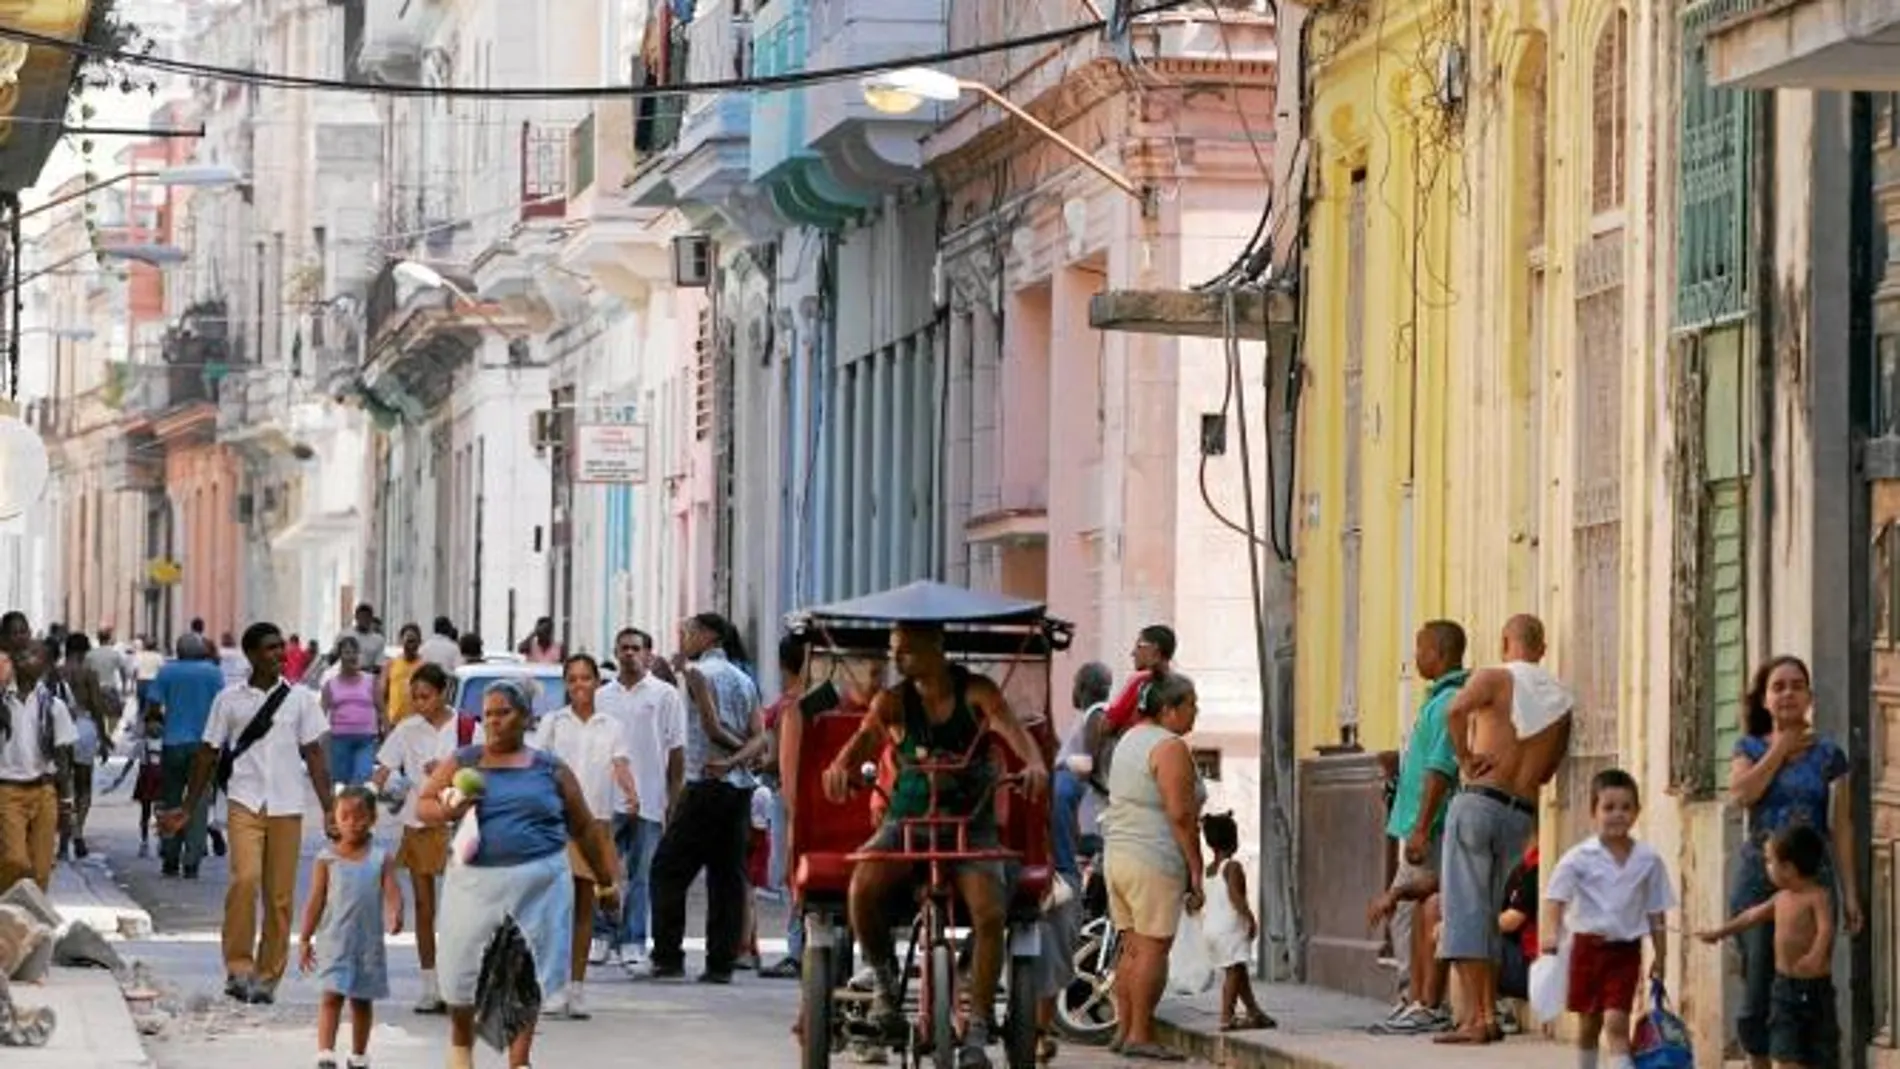 La mitad de las viviendas de la isla, como las del centro de La Habana, tiene problemas estructurales